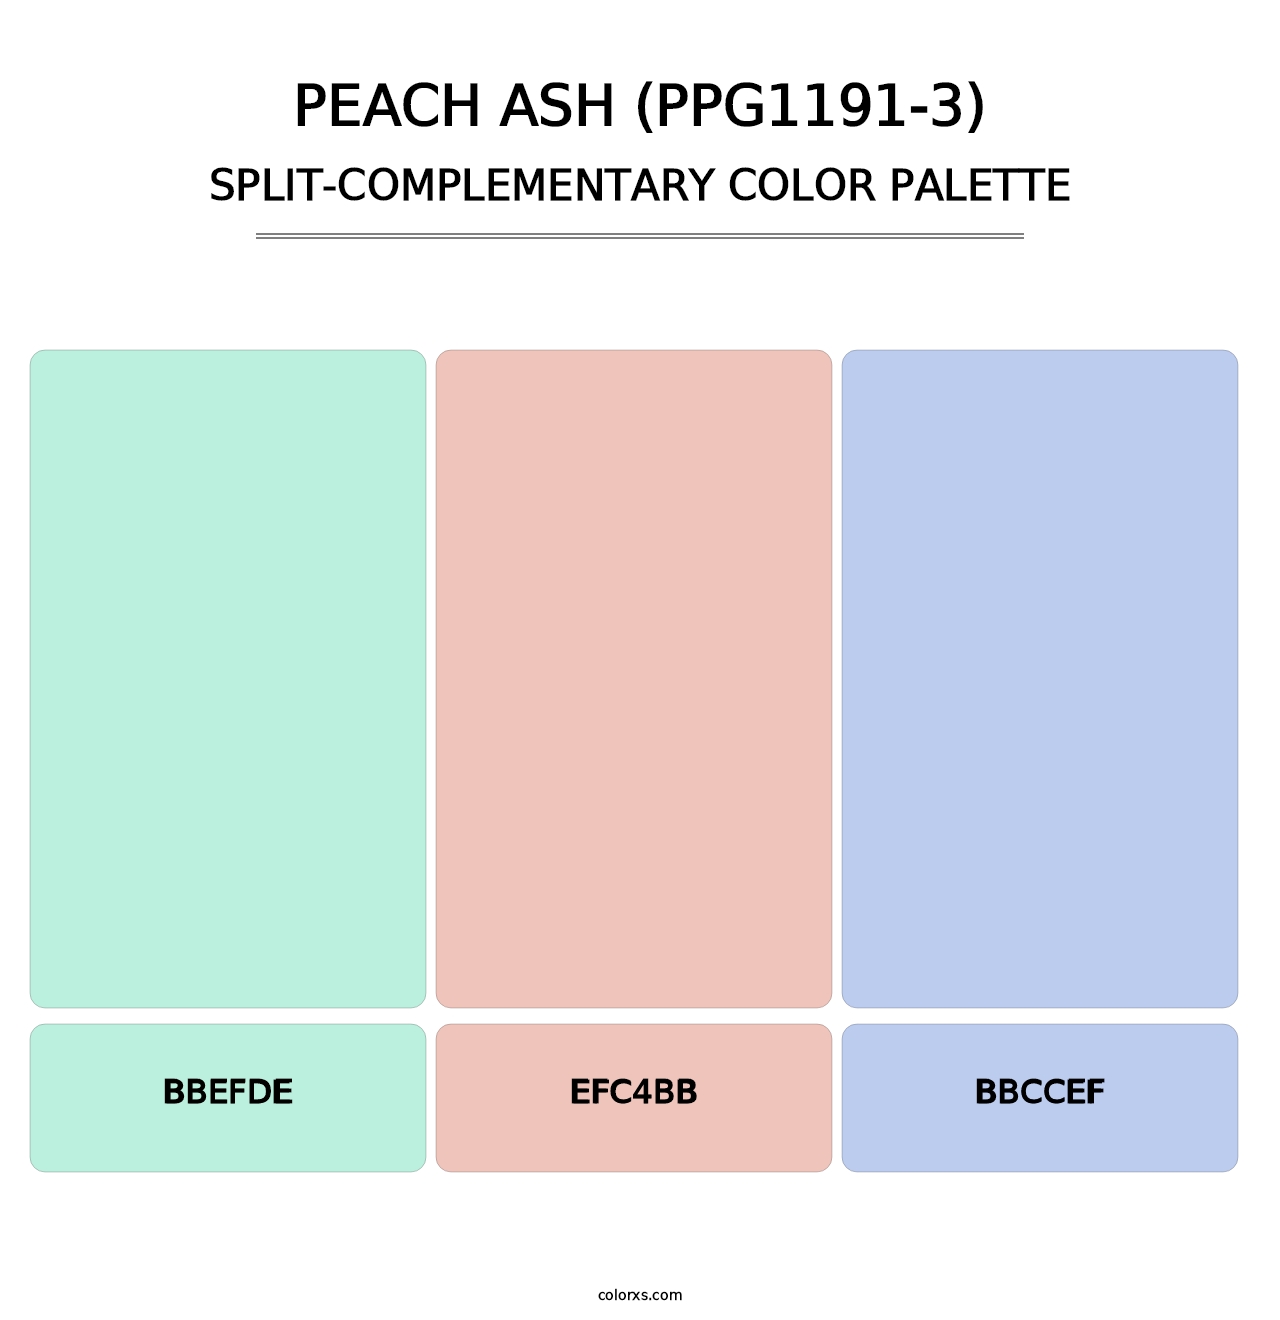 Peach Ash (PPG1191-3) - Split-Complementary Color Palette